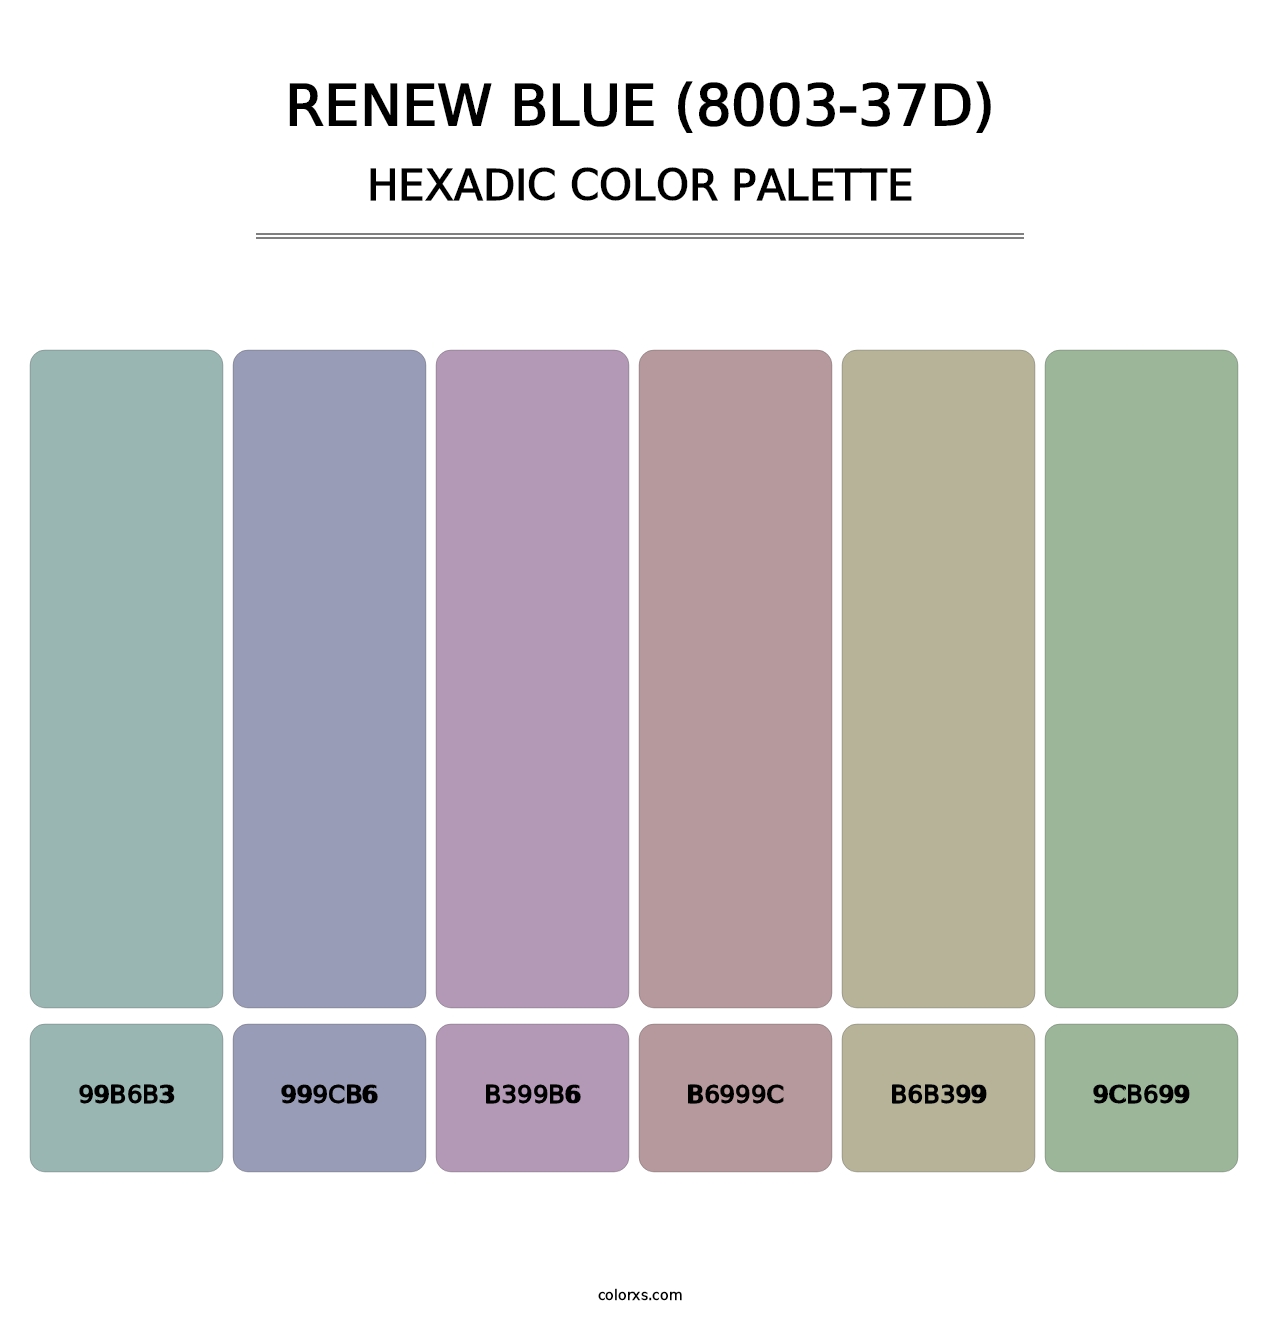 Renew Blue (8003-37D) - Hexadic Color Palette